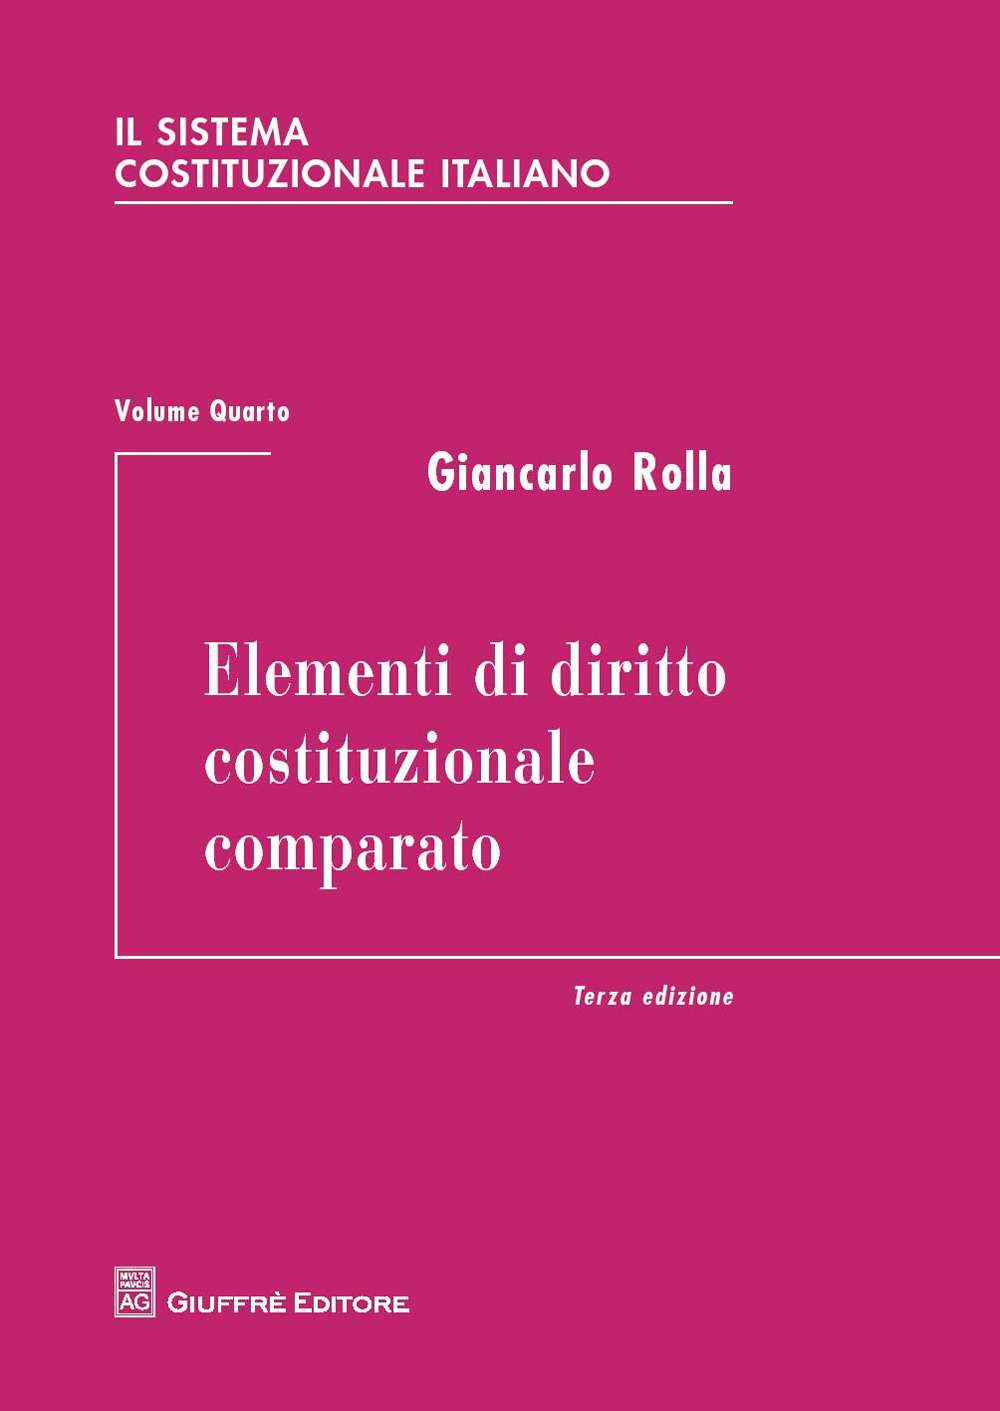 Image of Il sistema costituzionale italiano. Vol. 4: Elementi di diritto costituzionale comparato.